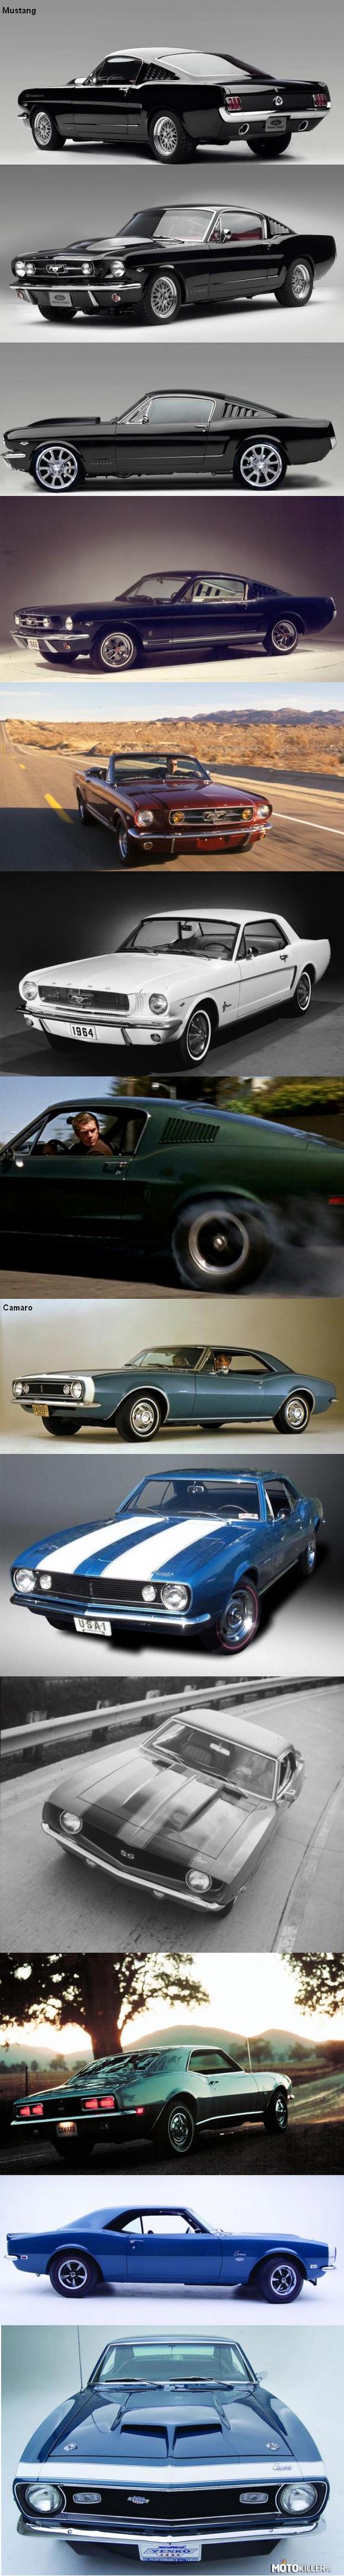 Mustang Vs. Camaro – Rywalizacja pomiędzy koncernami Ford oraz GM trwa od ponad stu lat. Jeden z jej najbardziej burzliwych etapów przypada na lata 60&prime; i 70&prime;, kiedy to konkurowały ze sobą dwie ikony muscle cars - Ford Mustang oraz Chevrolet Camaro. Który z nich jest waszym faworytem?

Produkcja legendarnego mustanga rozpoczęła się w 1964 roku. Założenie było proste: miał to być atrakcyjny i niedrogi samochód sportowy dla pierwszego powojennego pokolenia amerykańskiej młodzieży. Początkowo zakładano sprzedaż na poziomie 100 tys. egzemplarzy rocznie. Jakże wielkie musiało być zatem zdziwienie twórców mustanga, kiedy dowiedzieli się, że cel został osiągnięty już w 3 miesiące od debiutu... Po roku od wprowadzenia do sprzedaży nabywców znalazło 318 tys. mustangów, co stanowi rekord niepobity do dziś.
Odpowiedzią koncernu General Motors był model camaro, który zadebiutował w 1966 roku. Nie udało mu się pobić rekordu sprzedaży mustanga, za to górował nad nim w kategoriach mocy. W najmocniejszej wersji wielkie, siedmiolitrowe V8 forda generowało 390 KM, co nawet dziś jest wartością budzącą szacunek. Jednak topowe camaro osiągało oszałamiającą jak na tamte czasy moc 425 KM, i to z mniejszej pojemności (6,5 l).
Dzięki znacznej liczbie sprzedanych egzemplarzy podaż mustanga jest dosyć duża i do dziś można znaleźć zadbany egzemplarz. Problemem są jednak ceny - w Niemczech sięgają one nawet 200 tys. euro... Z racji mniejszej popularności camaro rzadziej występuje na rynku wtórnym. Chevy nie był też otaczany takim kultem jak mustang, stąd też jego ceny są znacznie bardziej przystępne. Za zachodnią granicą dobrze utrzymany egzemplarz można kupić już za 20 tys. euro.

Którego wybieracie? Mustang, czy Camaro?
Lubię To-Mustang
Jest Moc-Camaro 